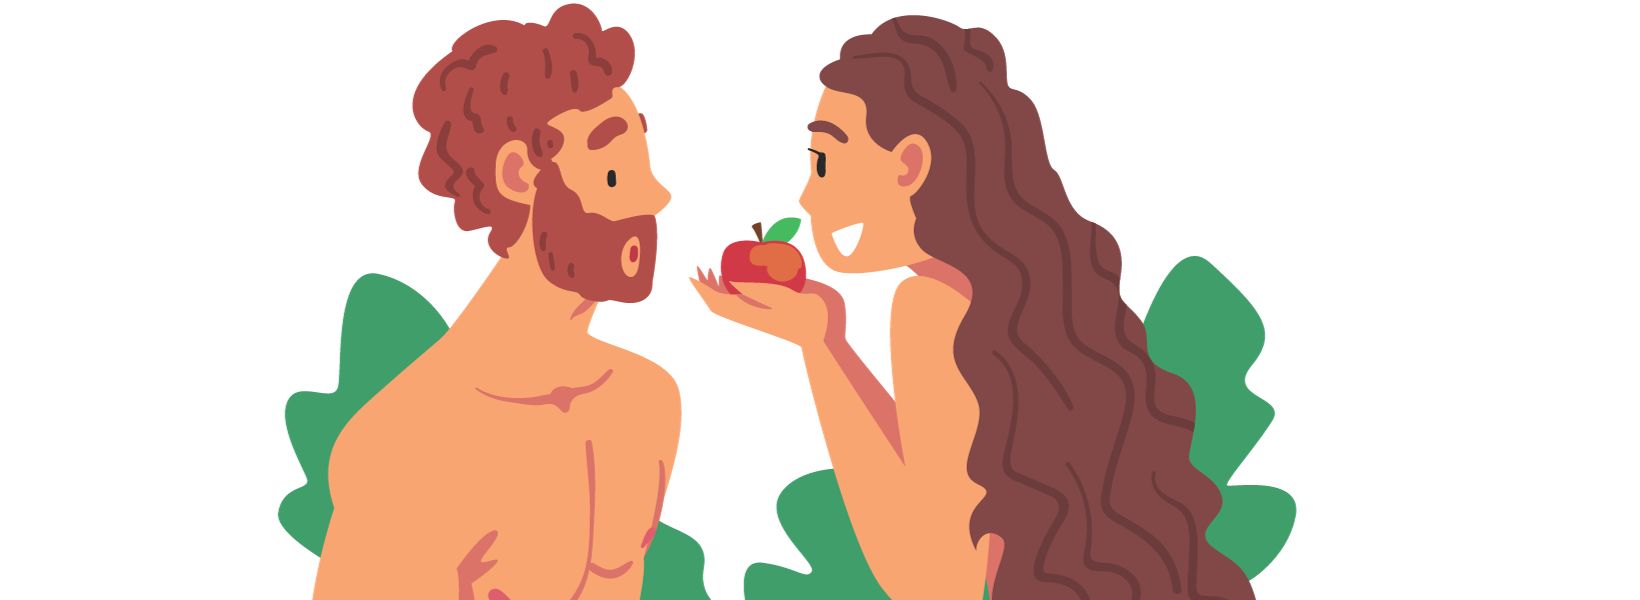 História infantil - Histórias da Bíblia - Adão e Eva